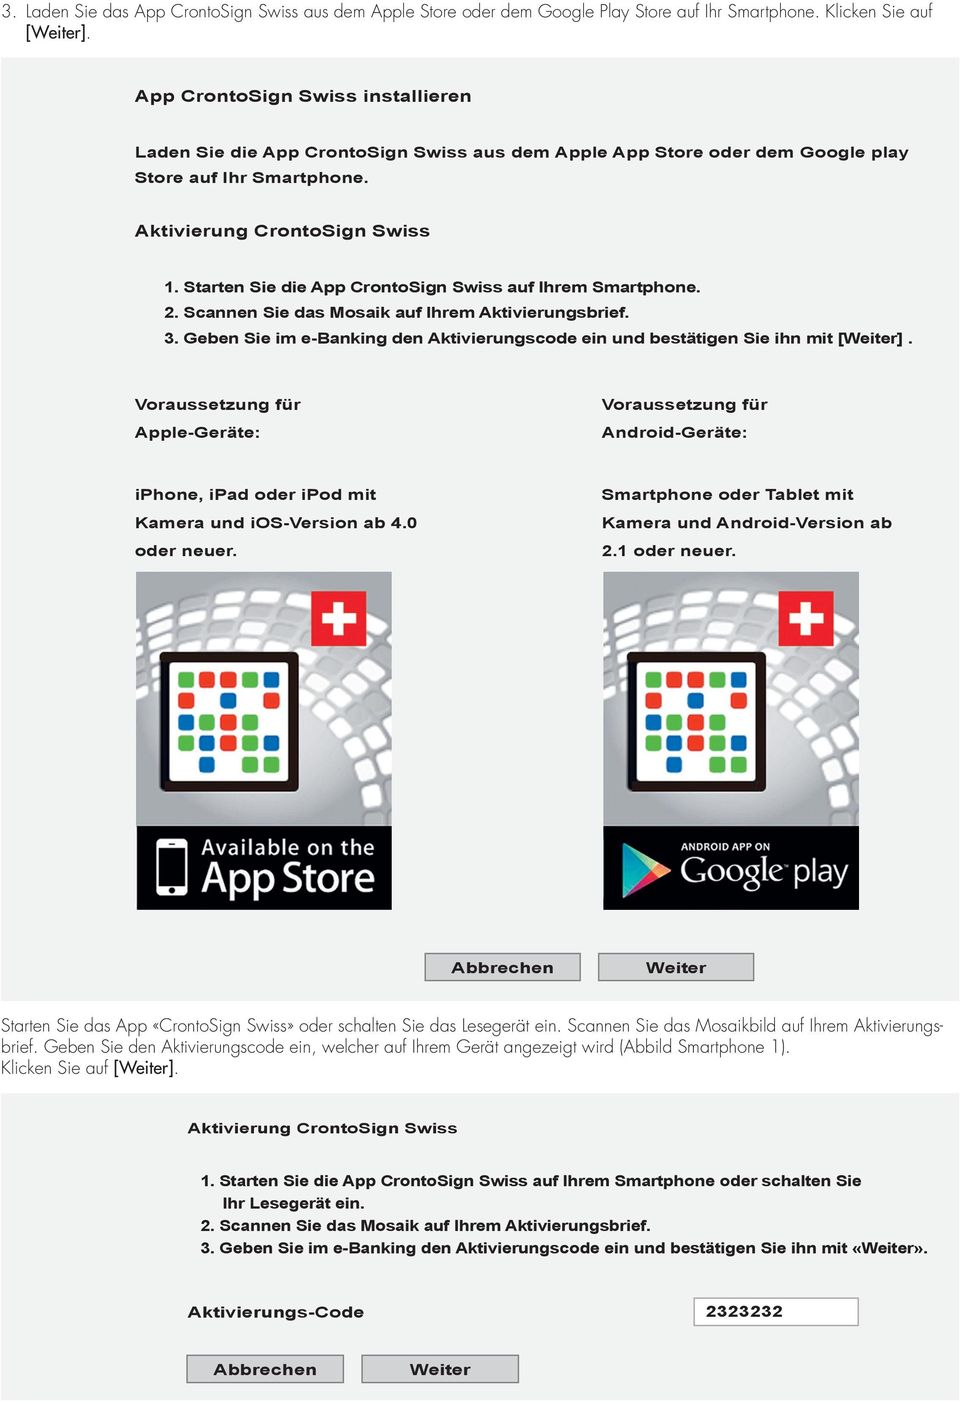 Starten Sie die App CrontoSign Swiss auf Ihrem Smartphone. 2. Scannen Sie das Mosaik auf Ihrem Aktivierungsbrief. 3. Geben Sie im e-banking den Aktivierungscode ein und bestätigen Sie ihn mit [].